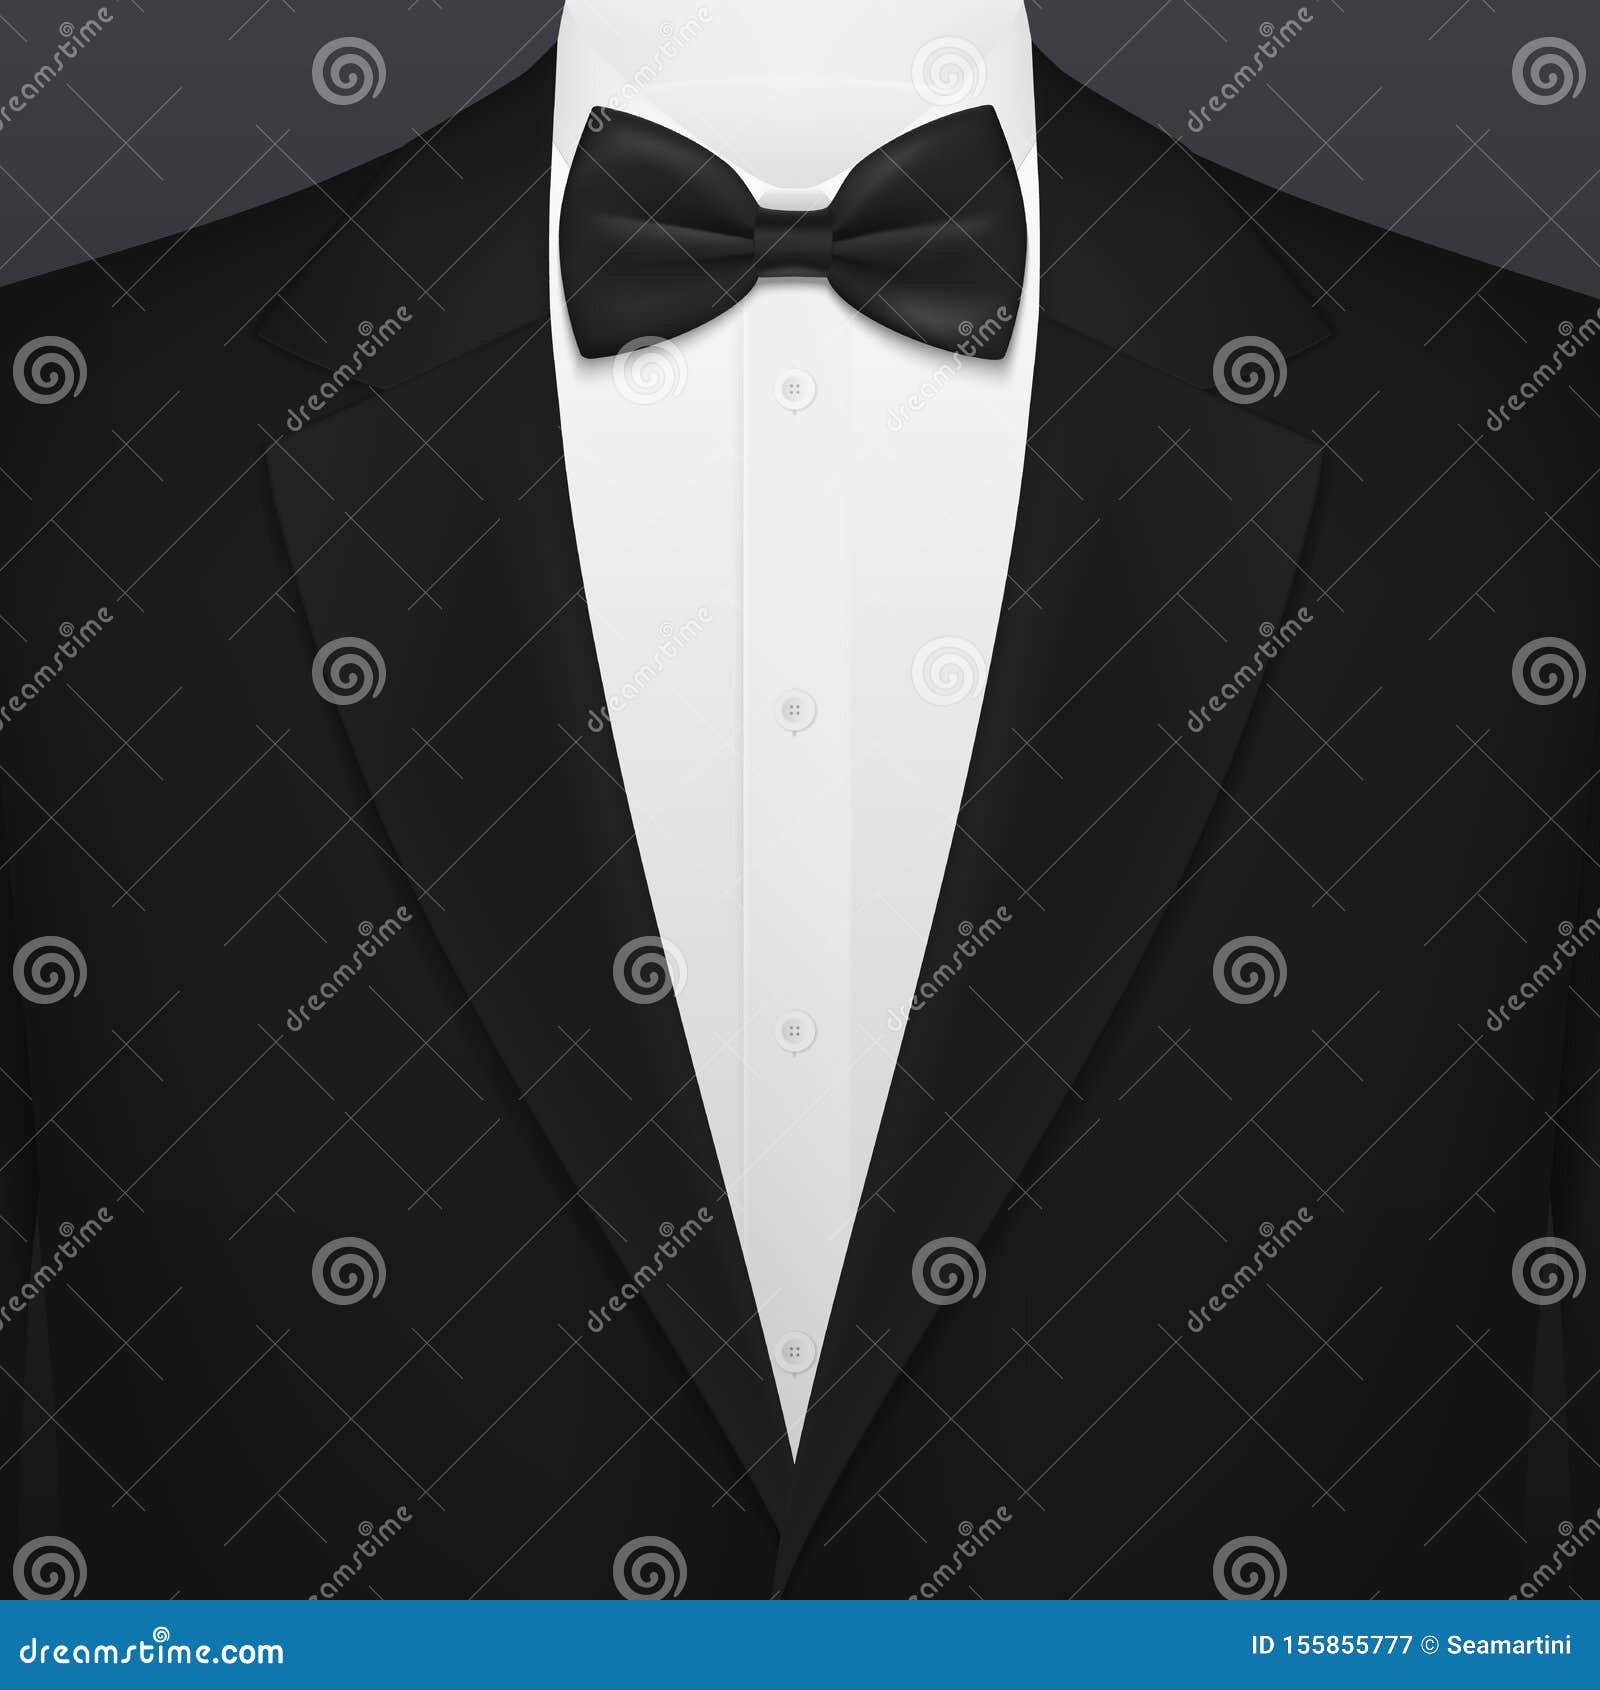 Black Smoking Suit, Gentleman Tuxedo with Necktie Stock Vector ...